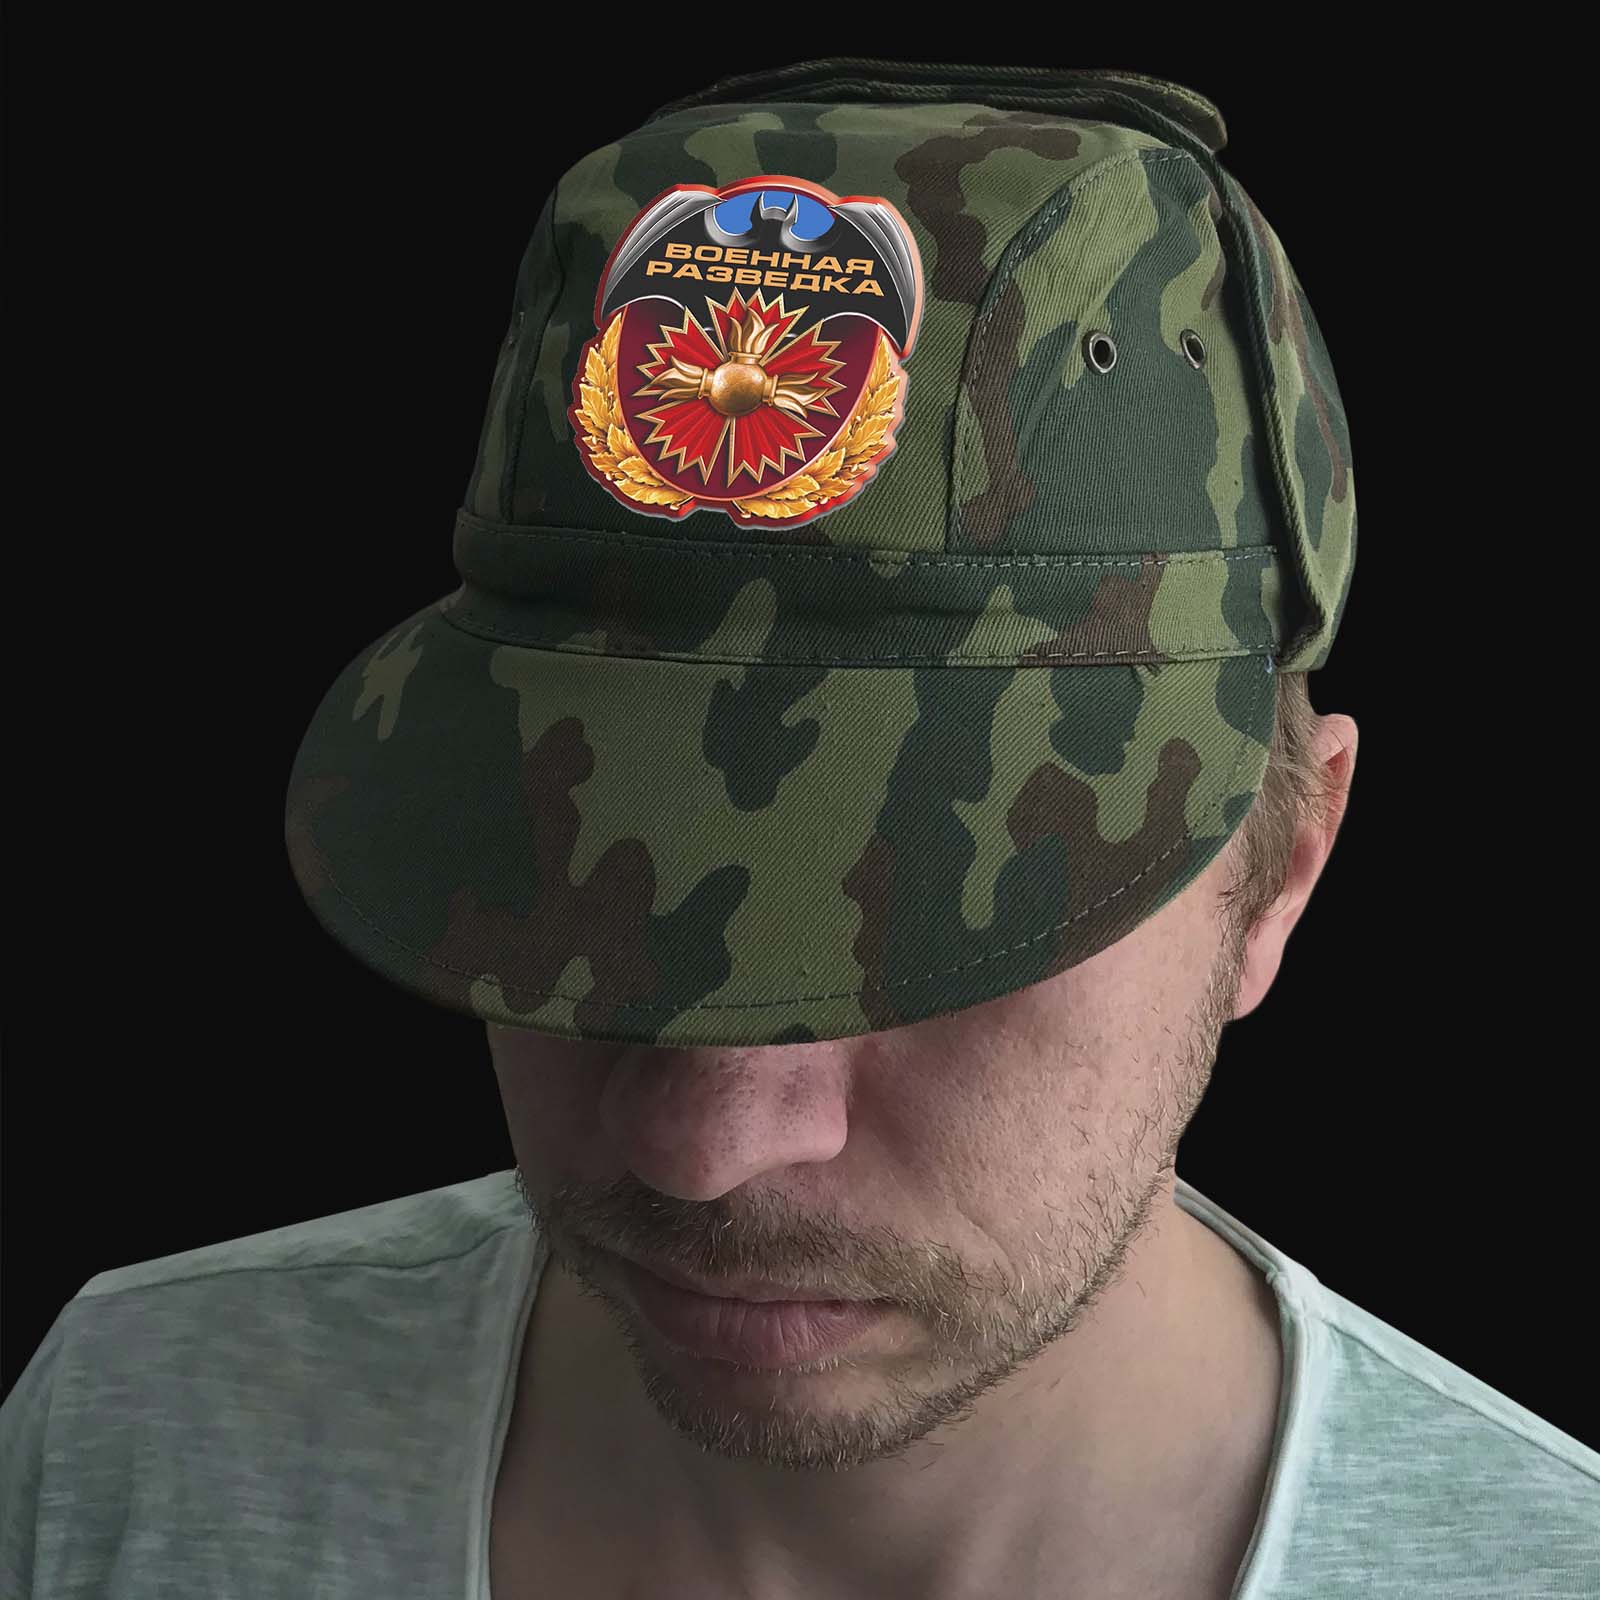 Камуфляжная кепка для военного разведчика - надежное качество, мужской дизайн №тр822